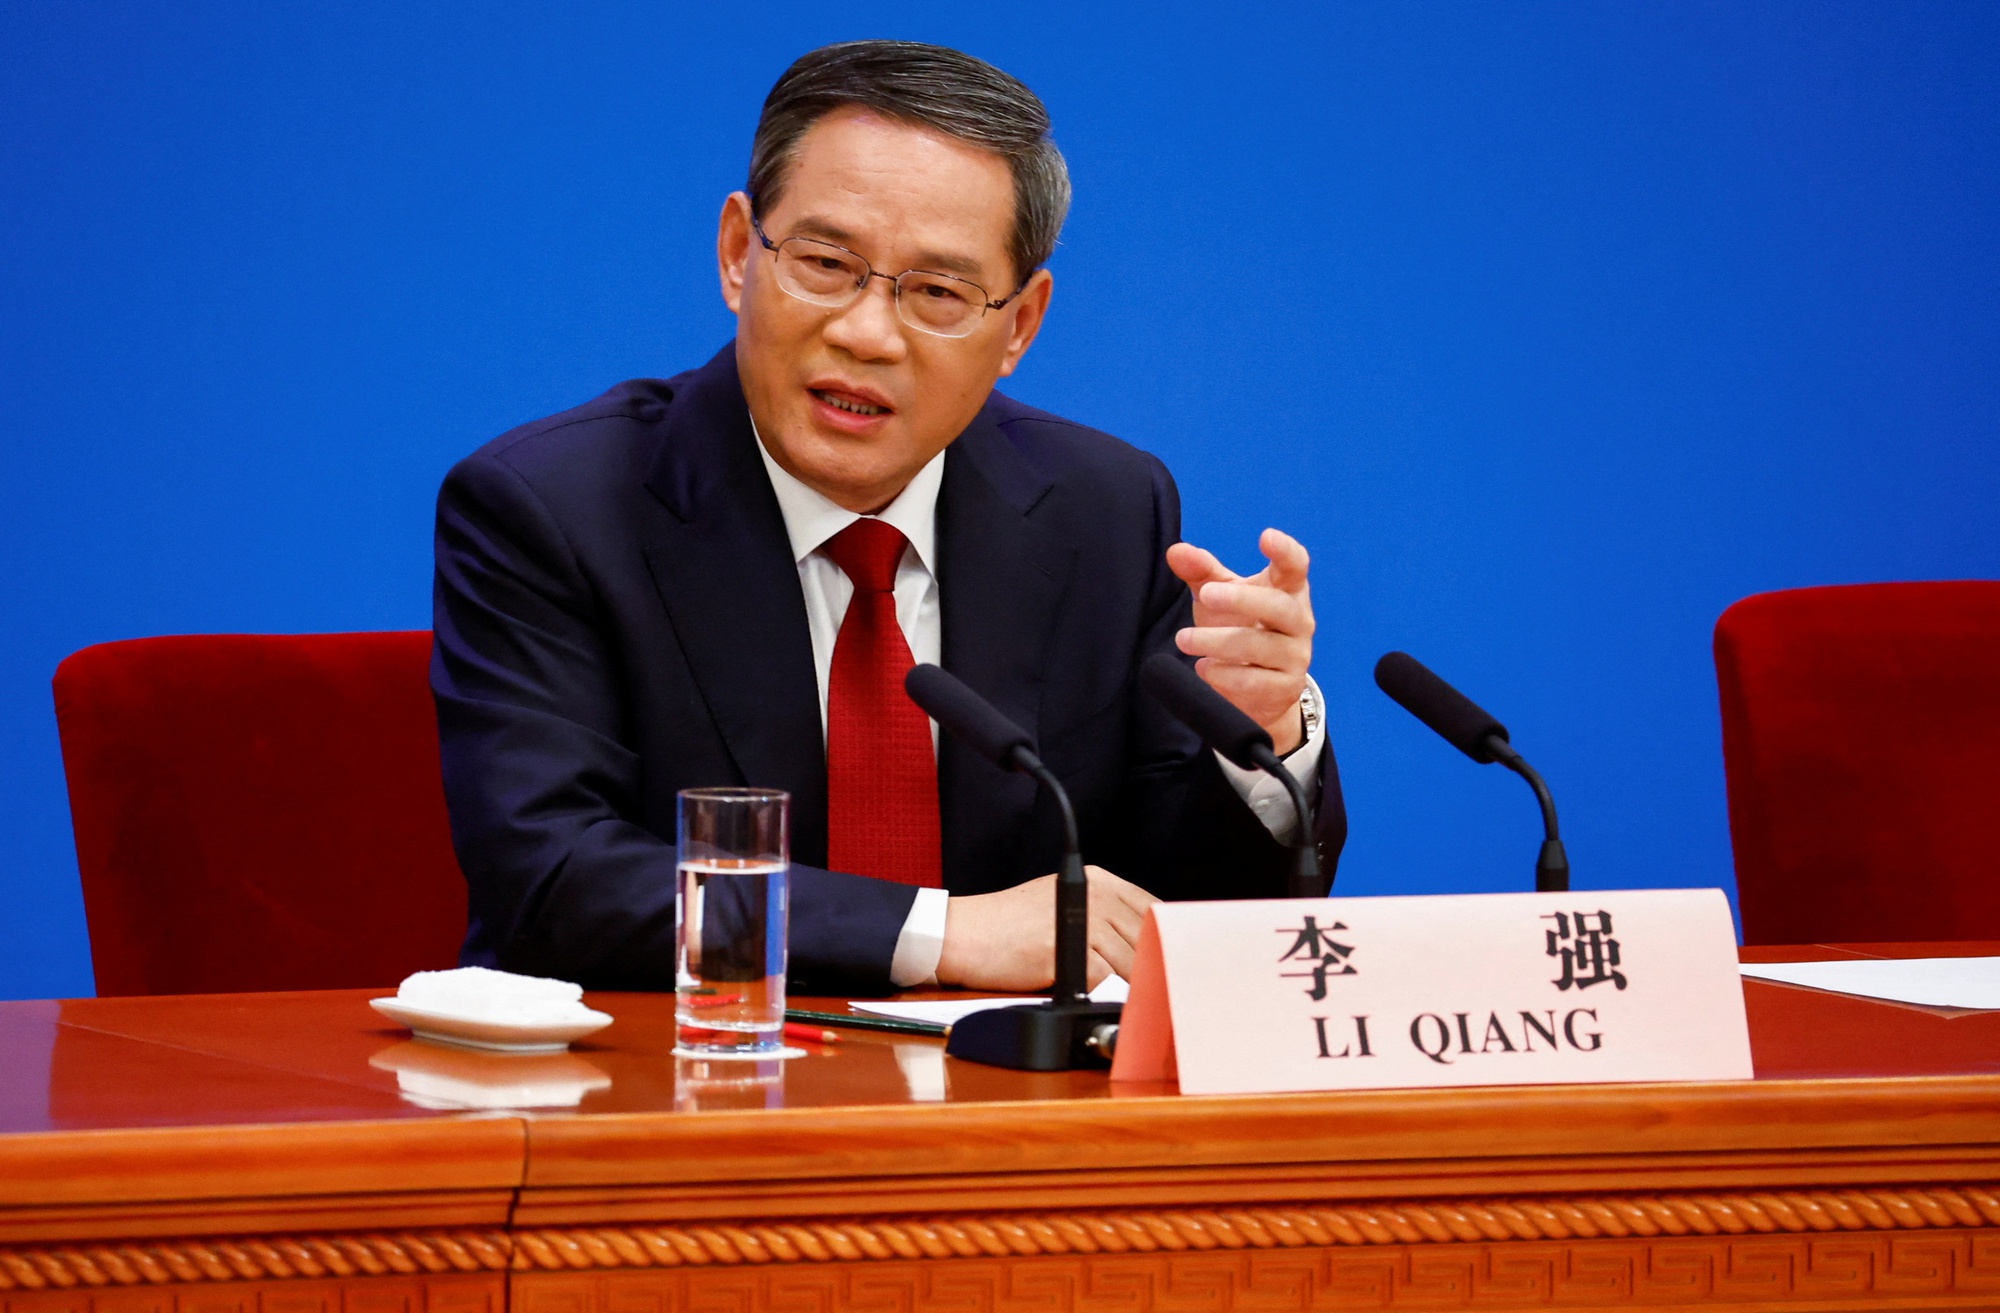 Tân thủ tướng Trung Quốc tổ chức cuộc họp báo đầu tiên - Ảnh 2.